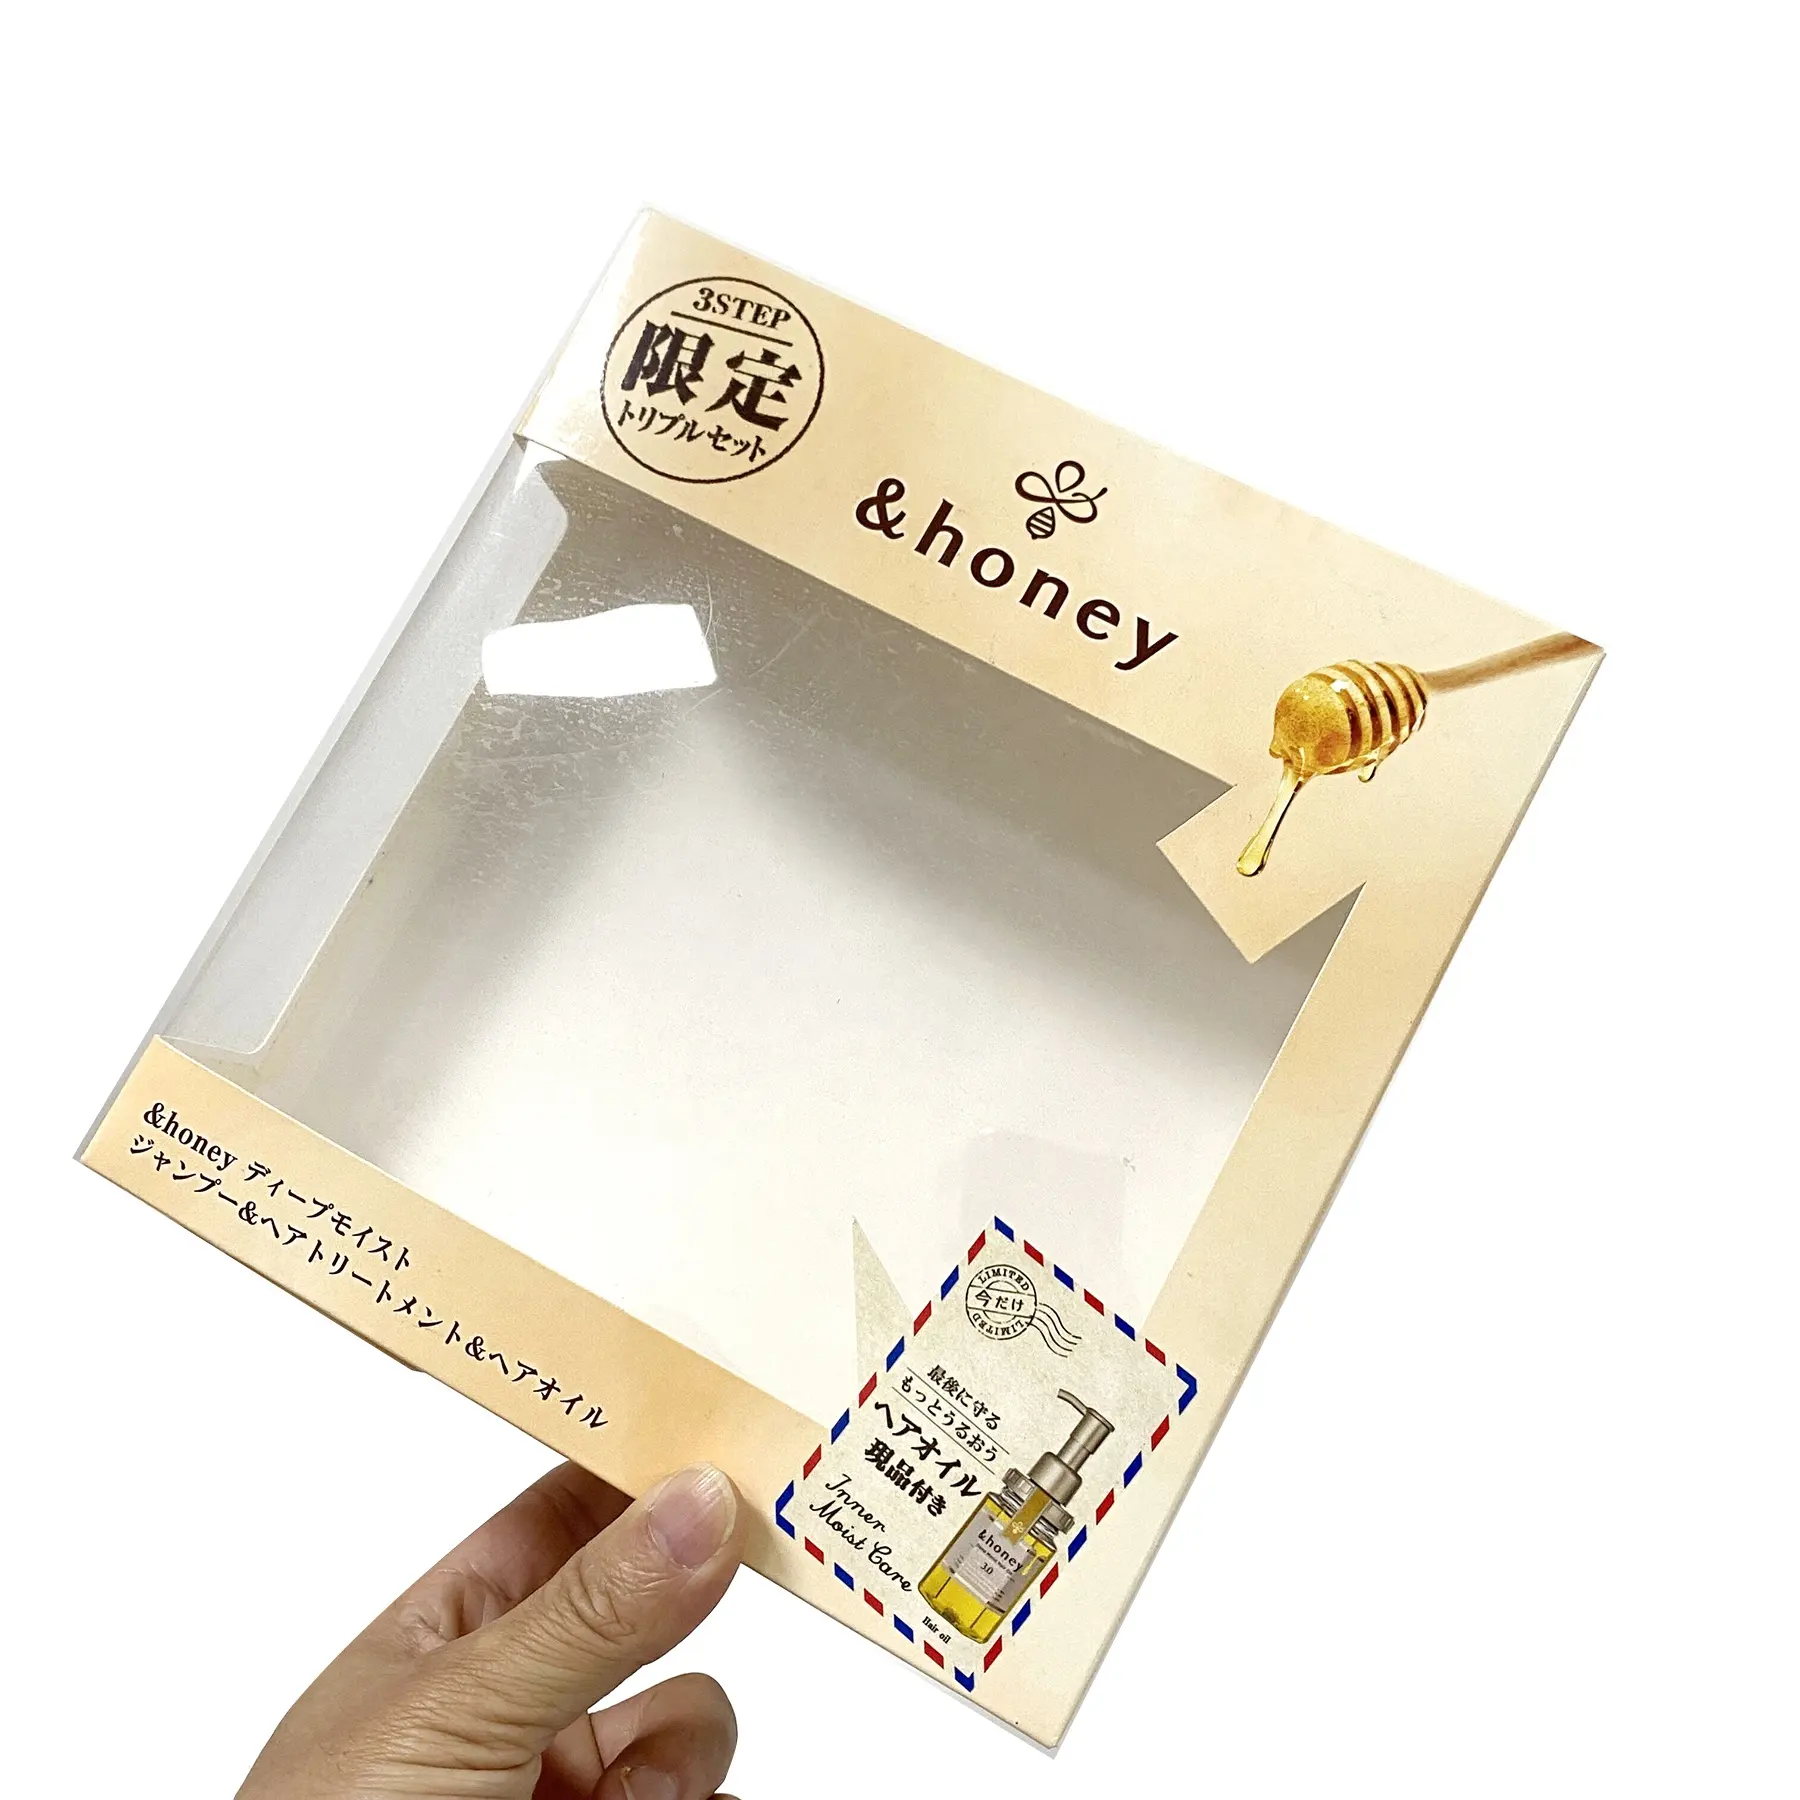 사용자 정의 다채로운 예술 코팅 종이 투명 창 충전기 창 케이크 상자 및 핸들 인쇄와 포장 상자